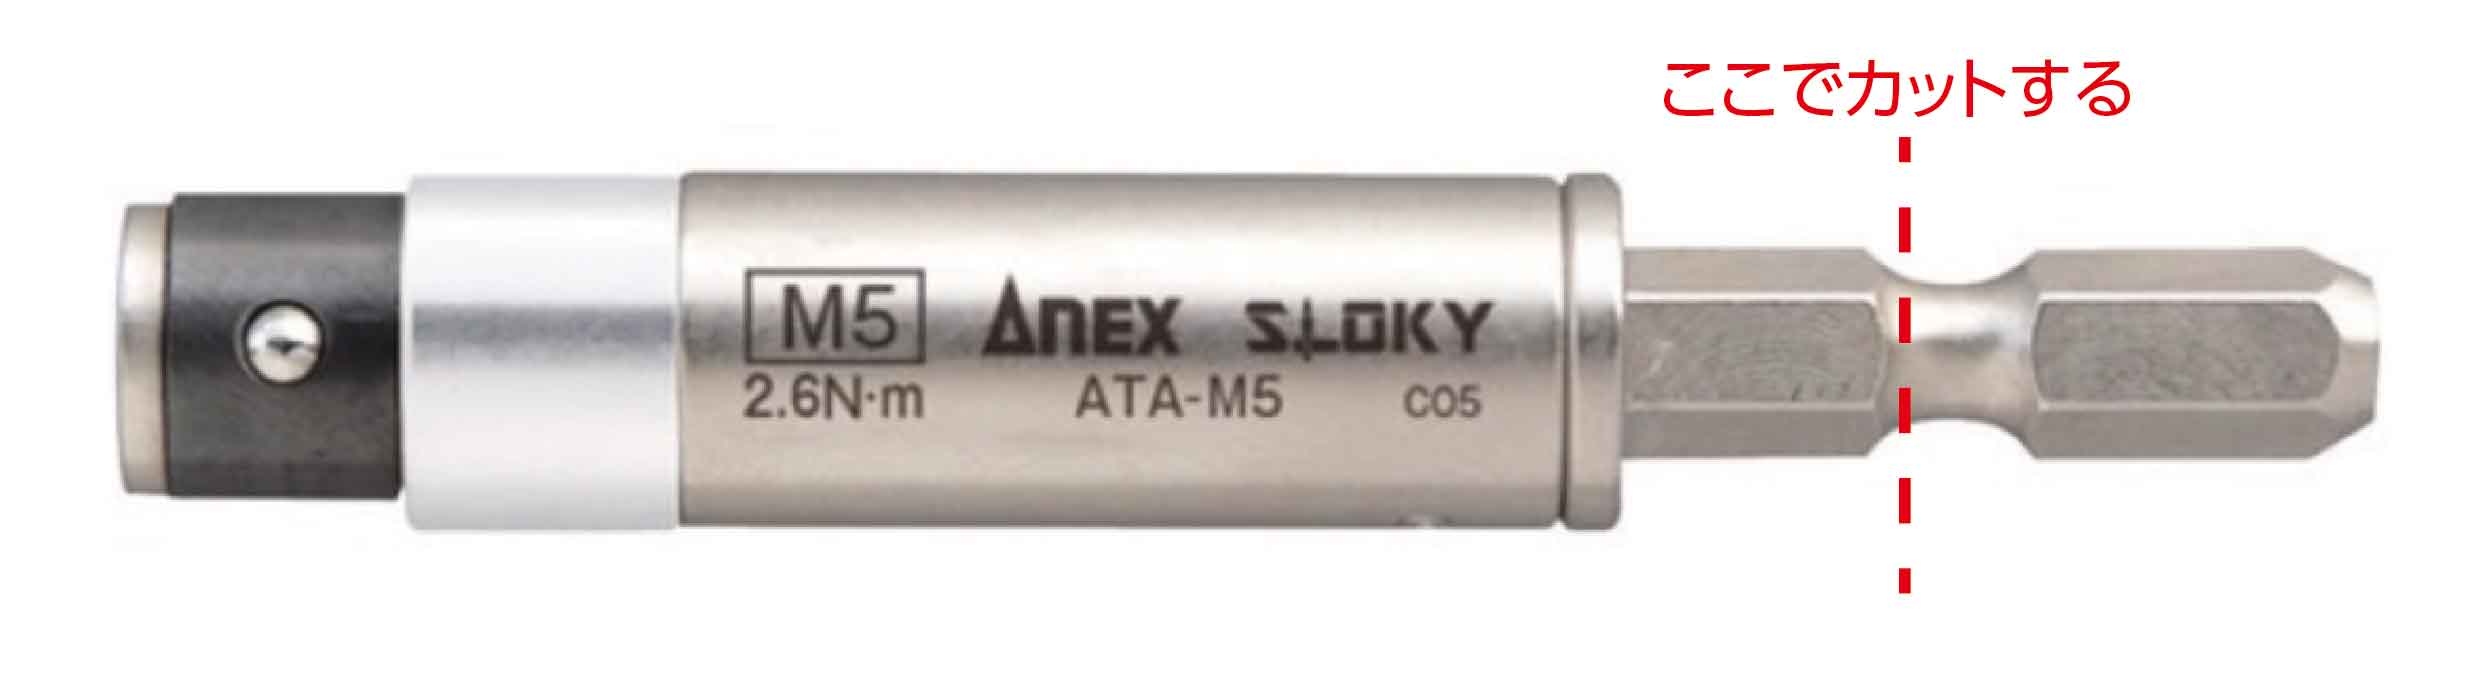 ANEX アネックス 電気工事用トルクアダプター M5ネジ用 設定トルク2.6Nm ATA-M5